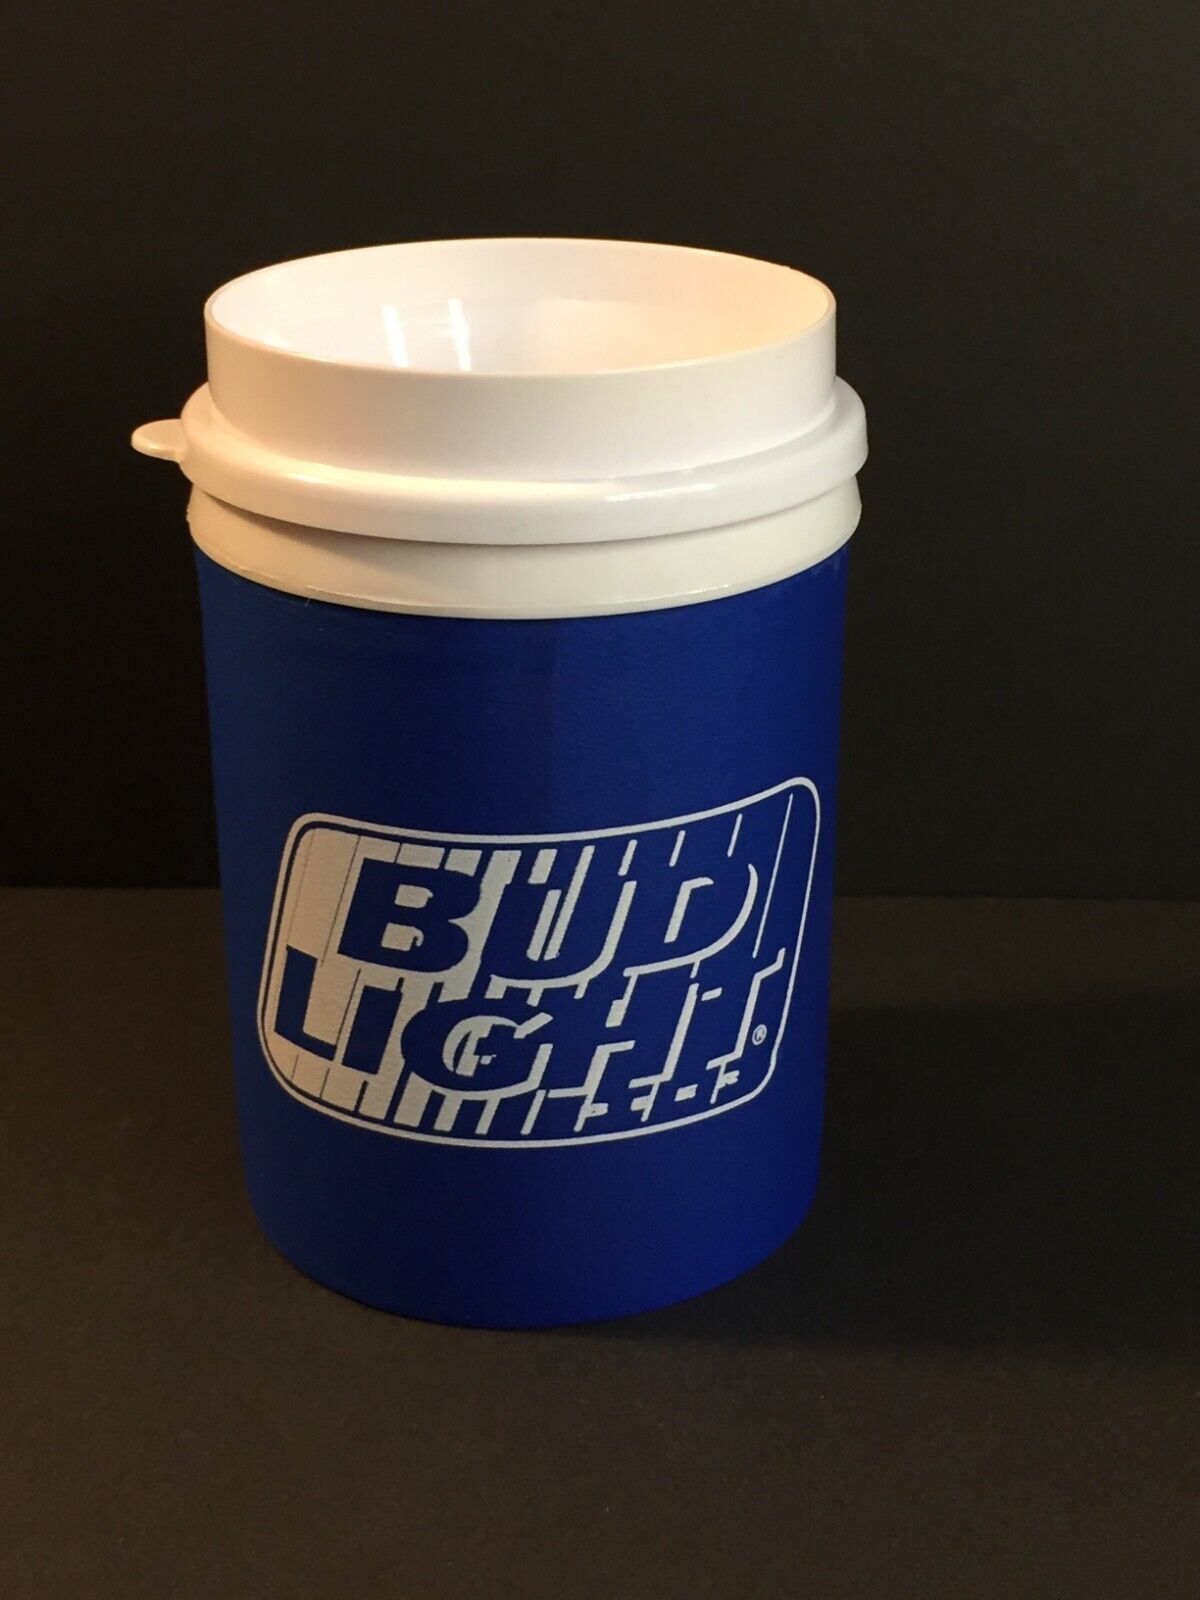 Budweiser Bud Light Hugger Kombo Cup with Lid - $7.01